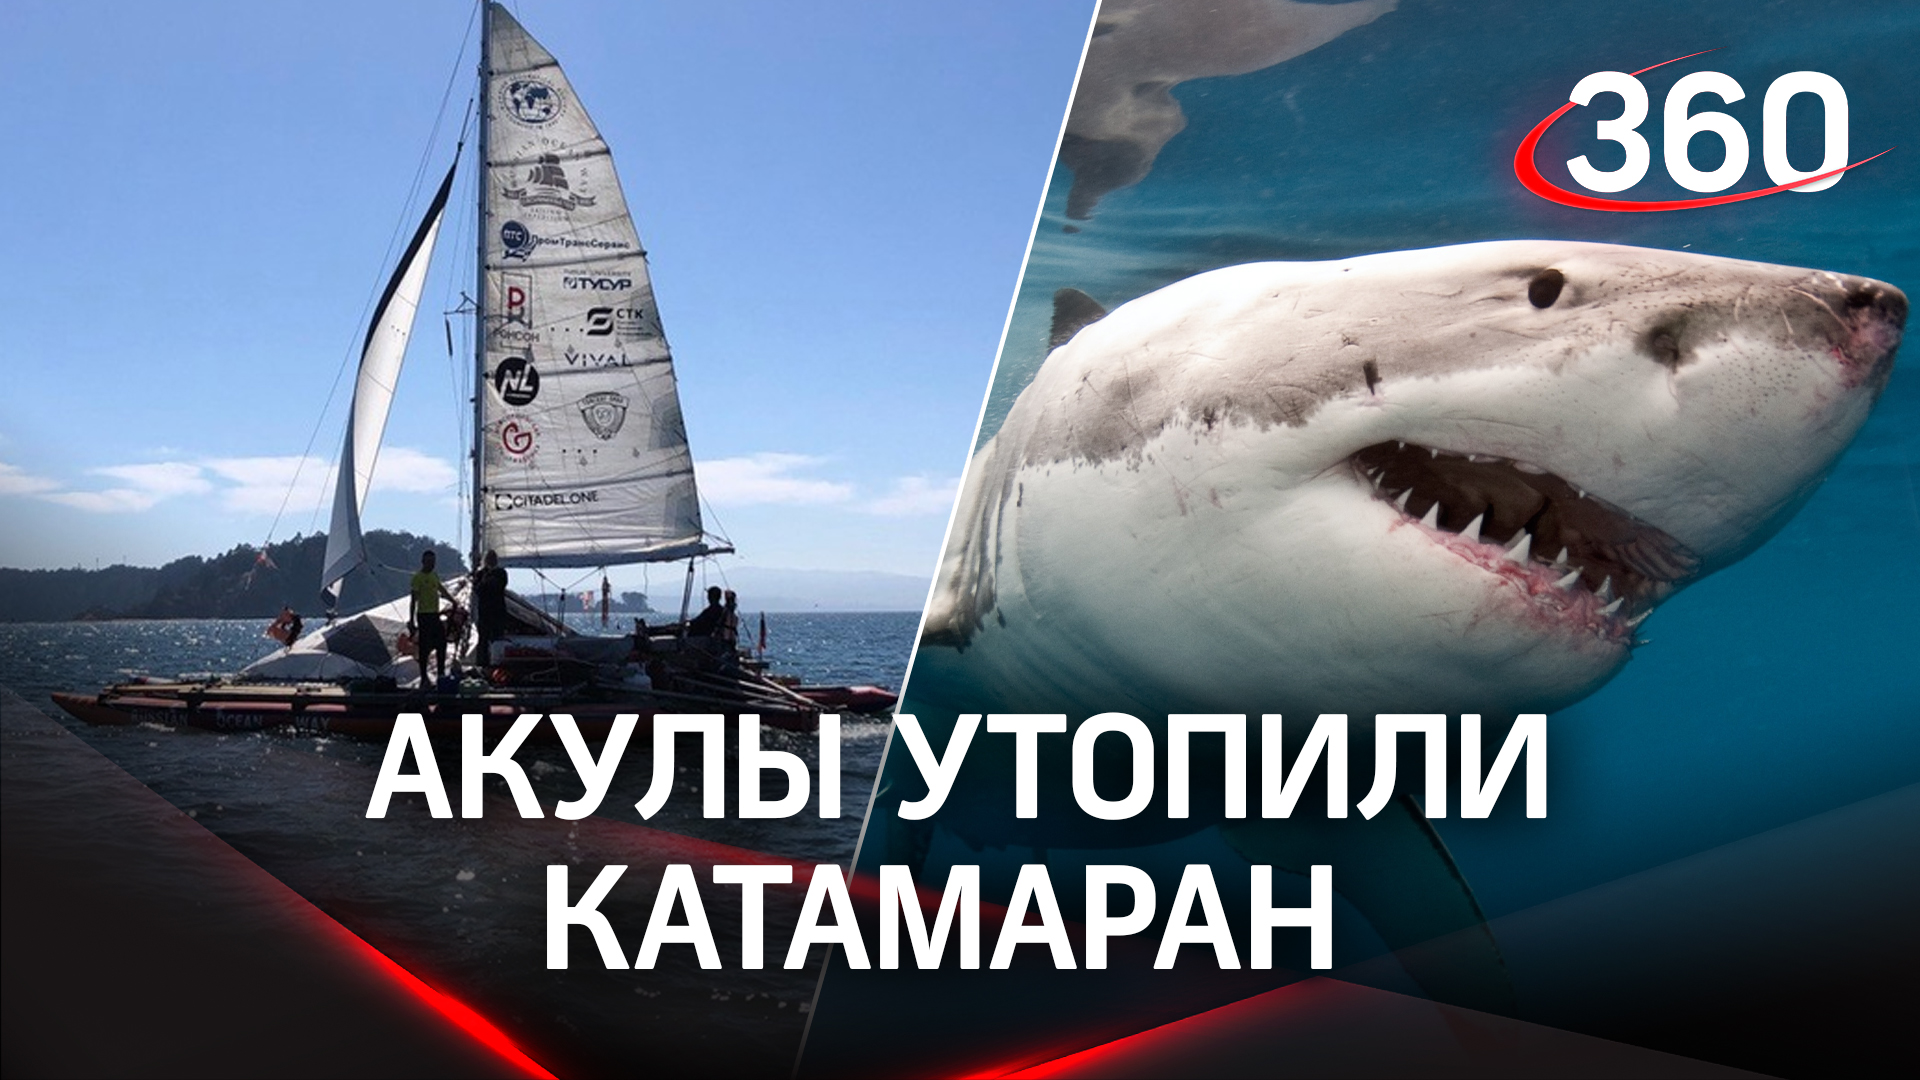 Кровожадные акулы устроили охоту на российских мореплавателей - катамаран экспедиции ушёл на дно